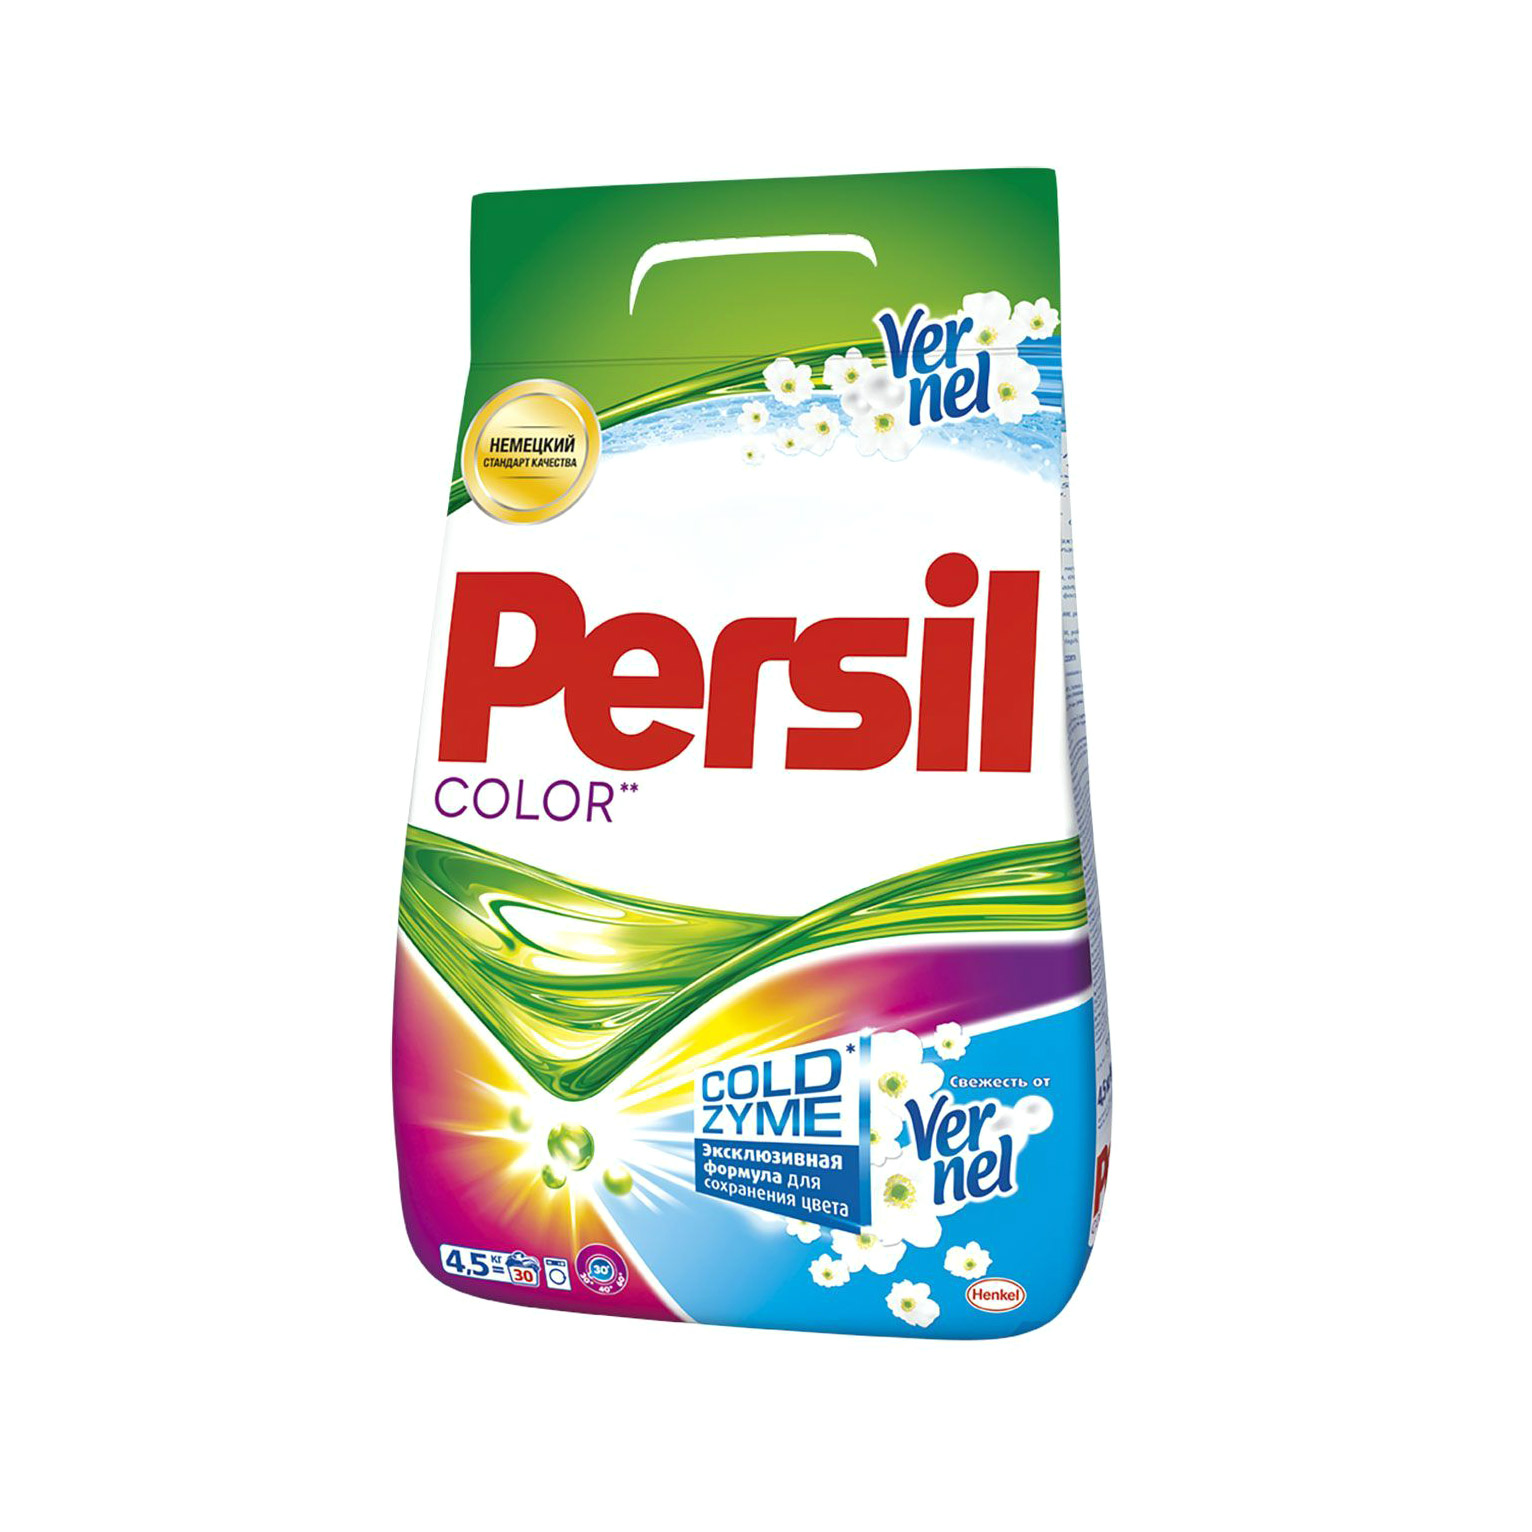 Стиральный порошок Persil Color свежесть Vernel 4.5 кг стиральный порошок tide автомат color 60 стирок 9 кг